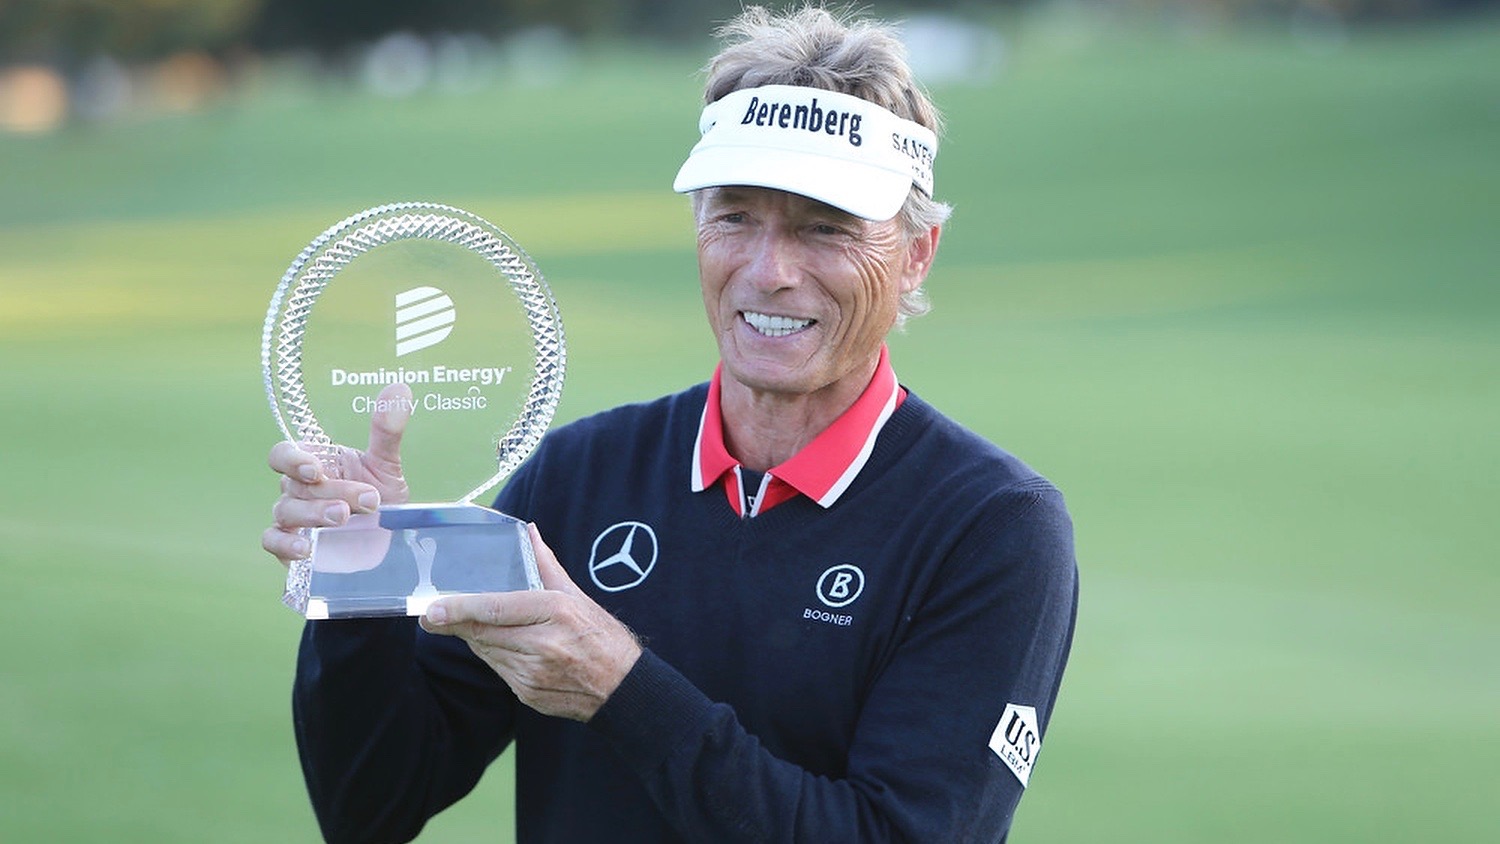 Der Titel bei der Dominion Energy Charity Classic war der 42. PGA-Tour-Champions-Sieg für Bernhard Langer.